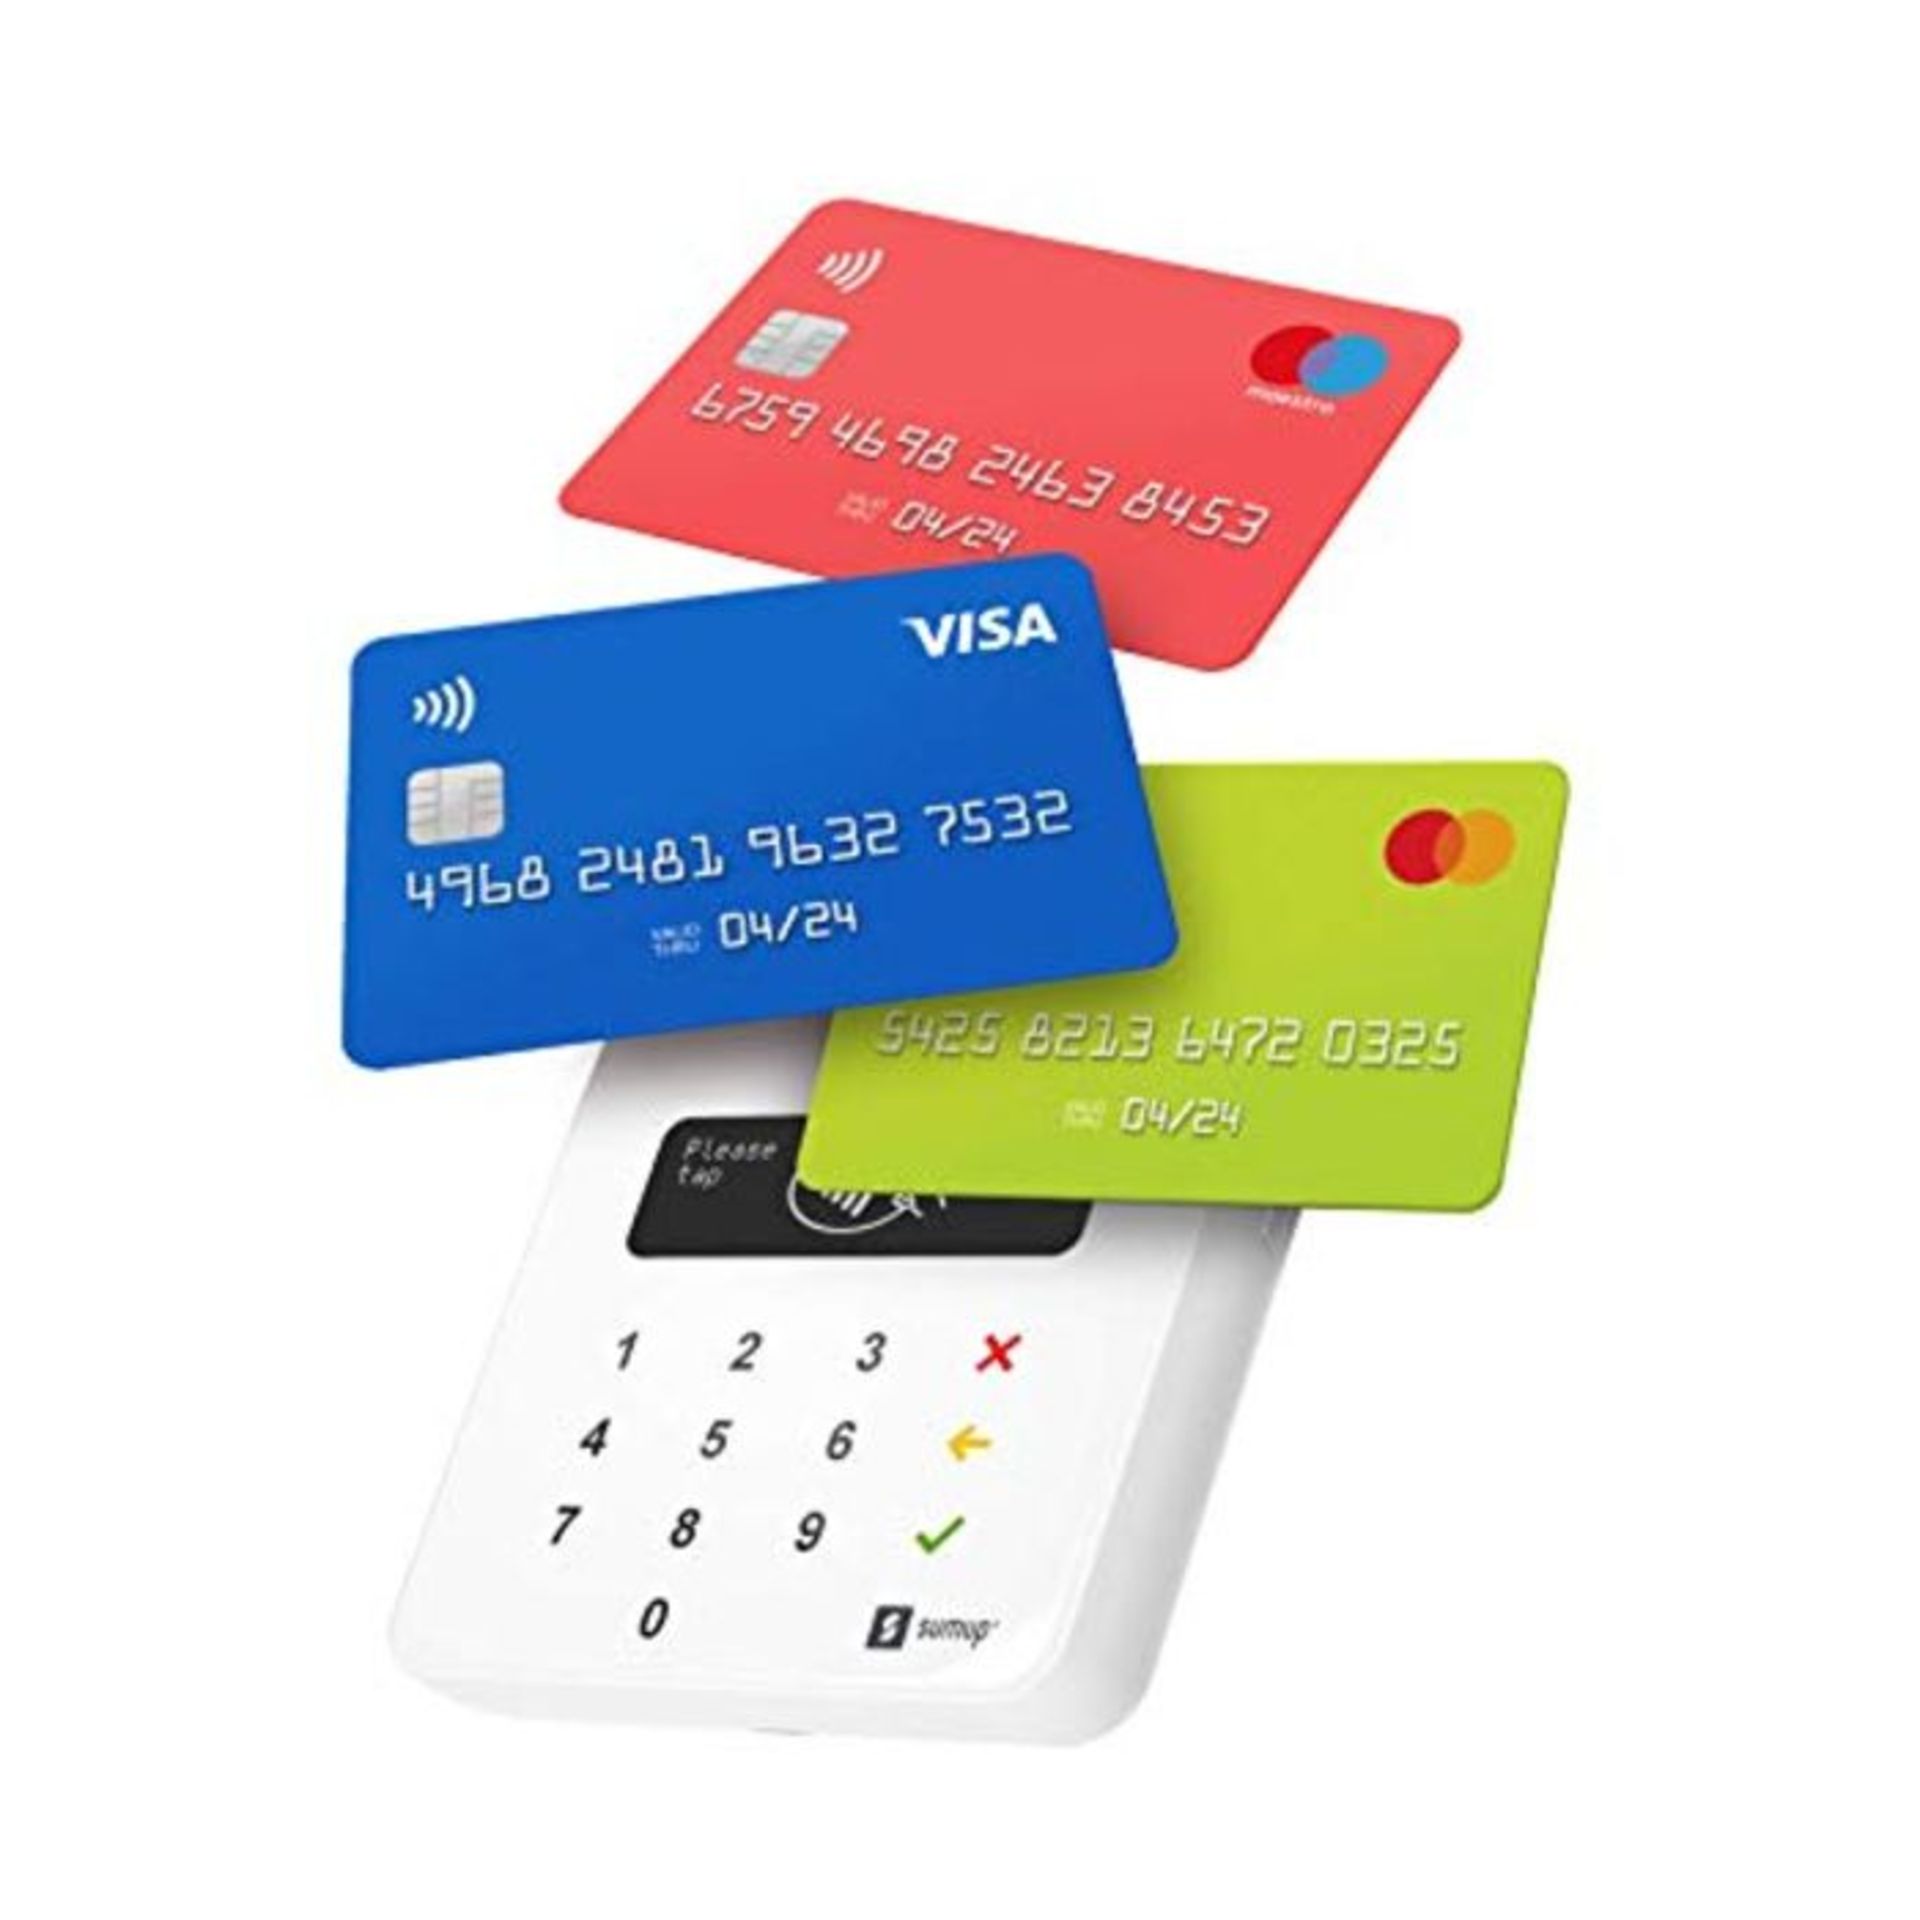 SumUp Air mobiles Kartenterminal zum bargeldlosen Bezahlen mit EC Karte, Kreditkarte A